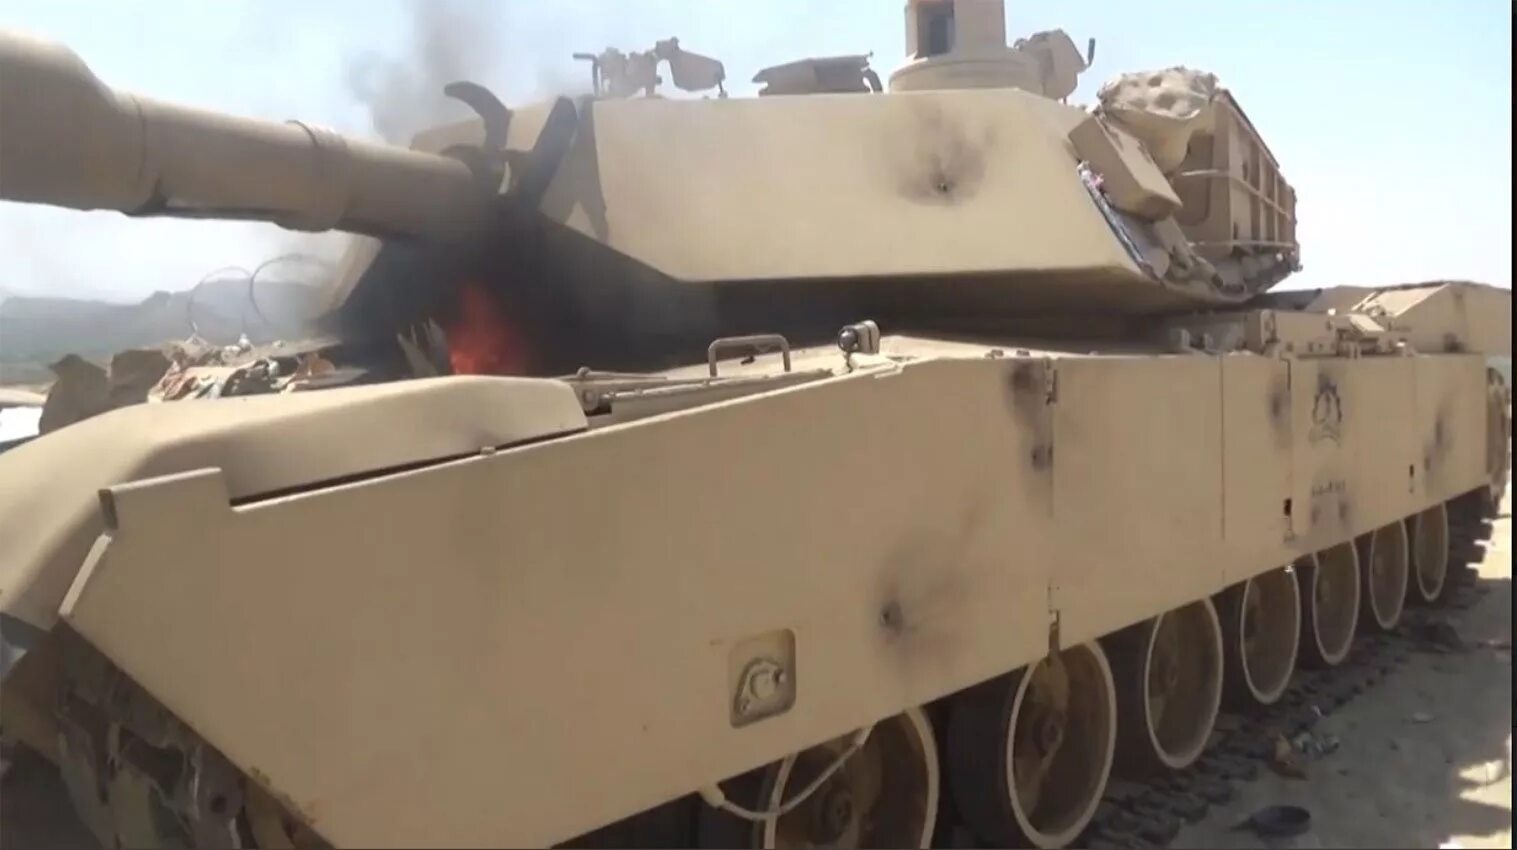 Подбит первый танк абрамс. M1 Abrams в Йемене. Танк m1a2 "Абрамс" подбили. M1 Абрамс экипаж.